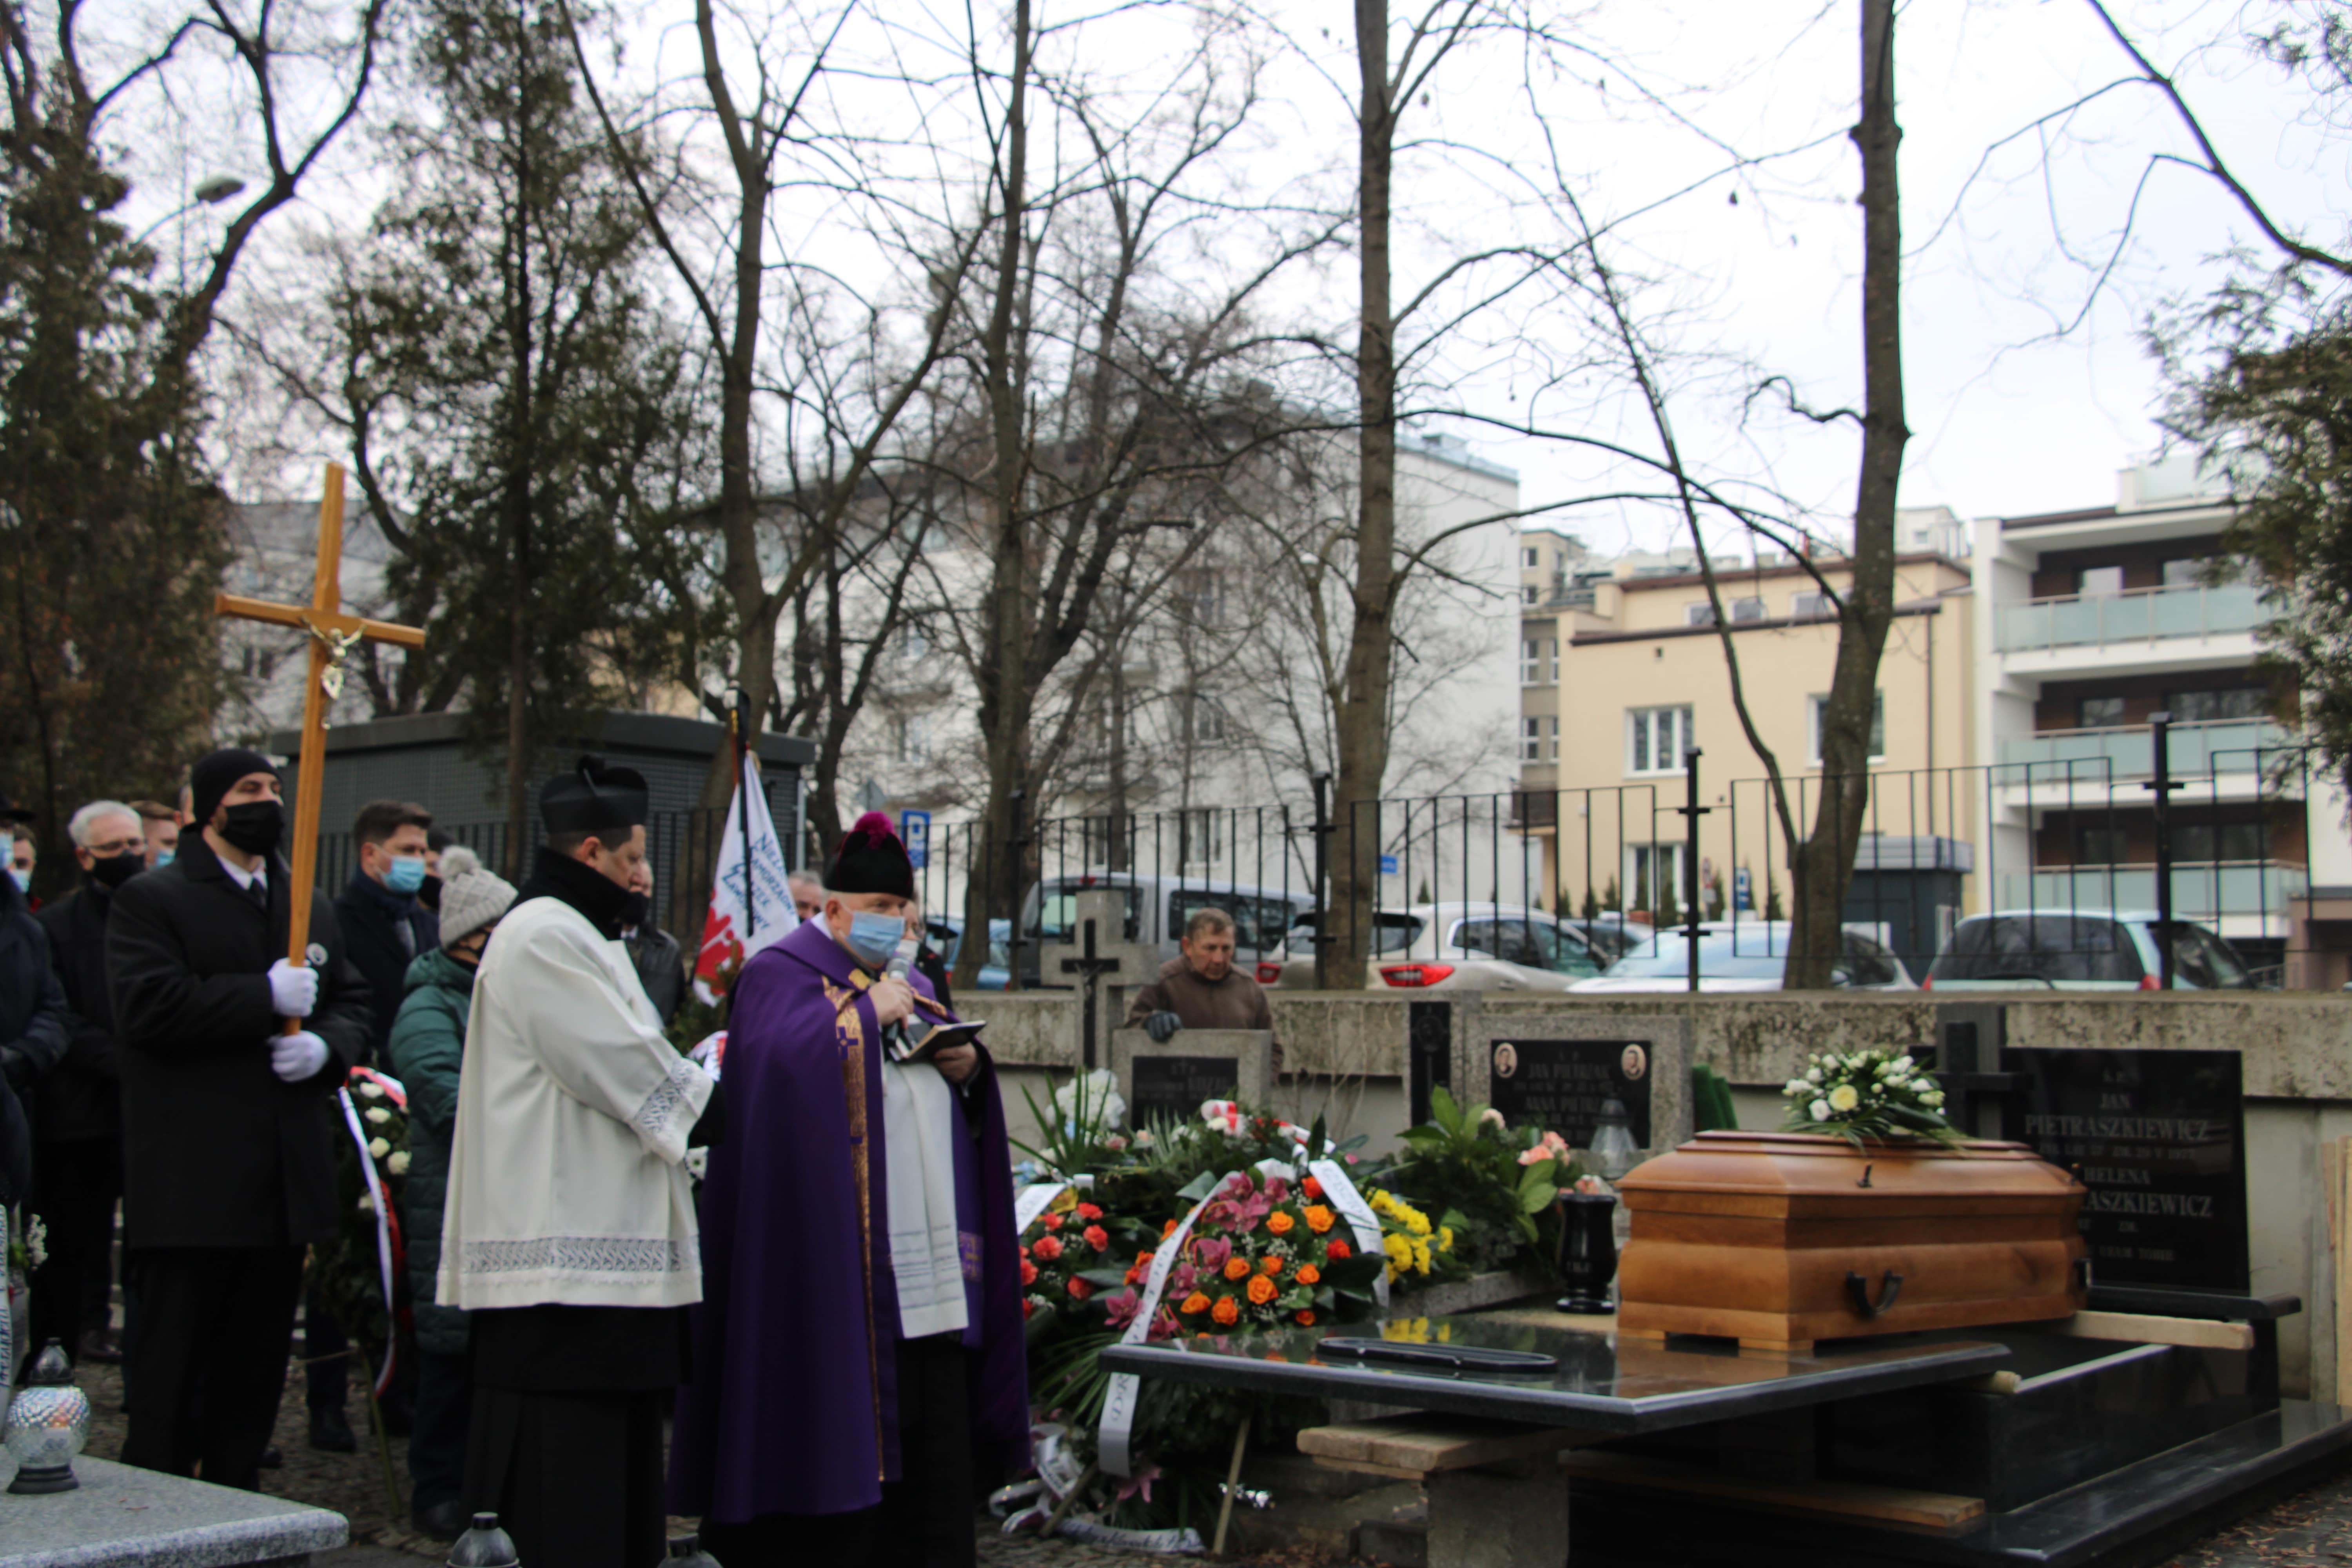 Pogrzeb Heleny Pietraszkiewicz w Lublinie. - Była wyczulona na sprawy społeczne, ale była również oddana sprawom ojczyzny - Zdjęcie główne